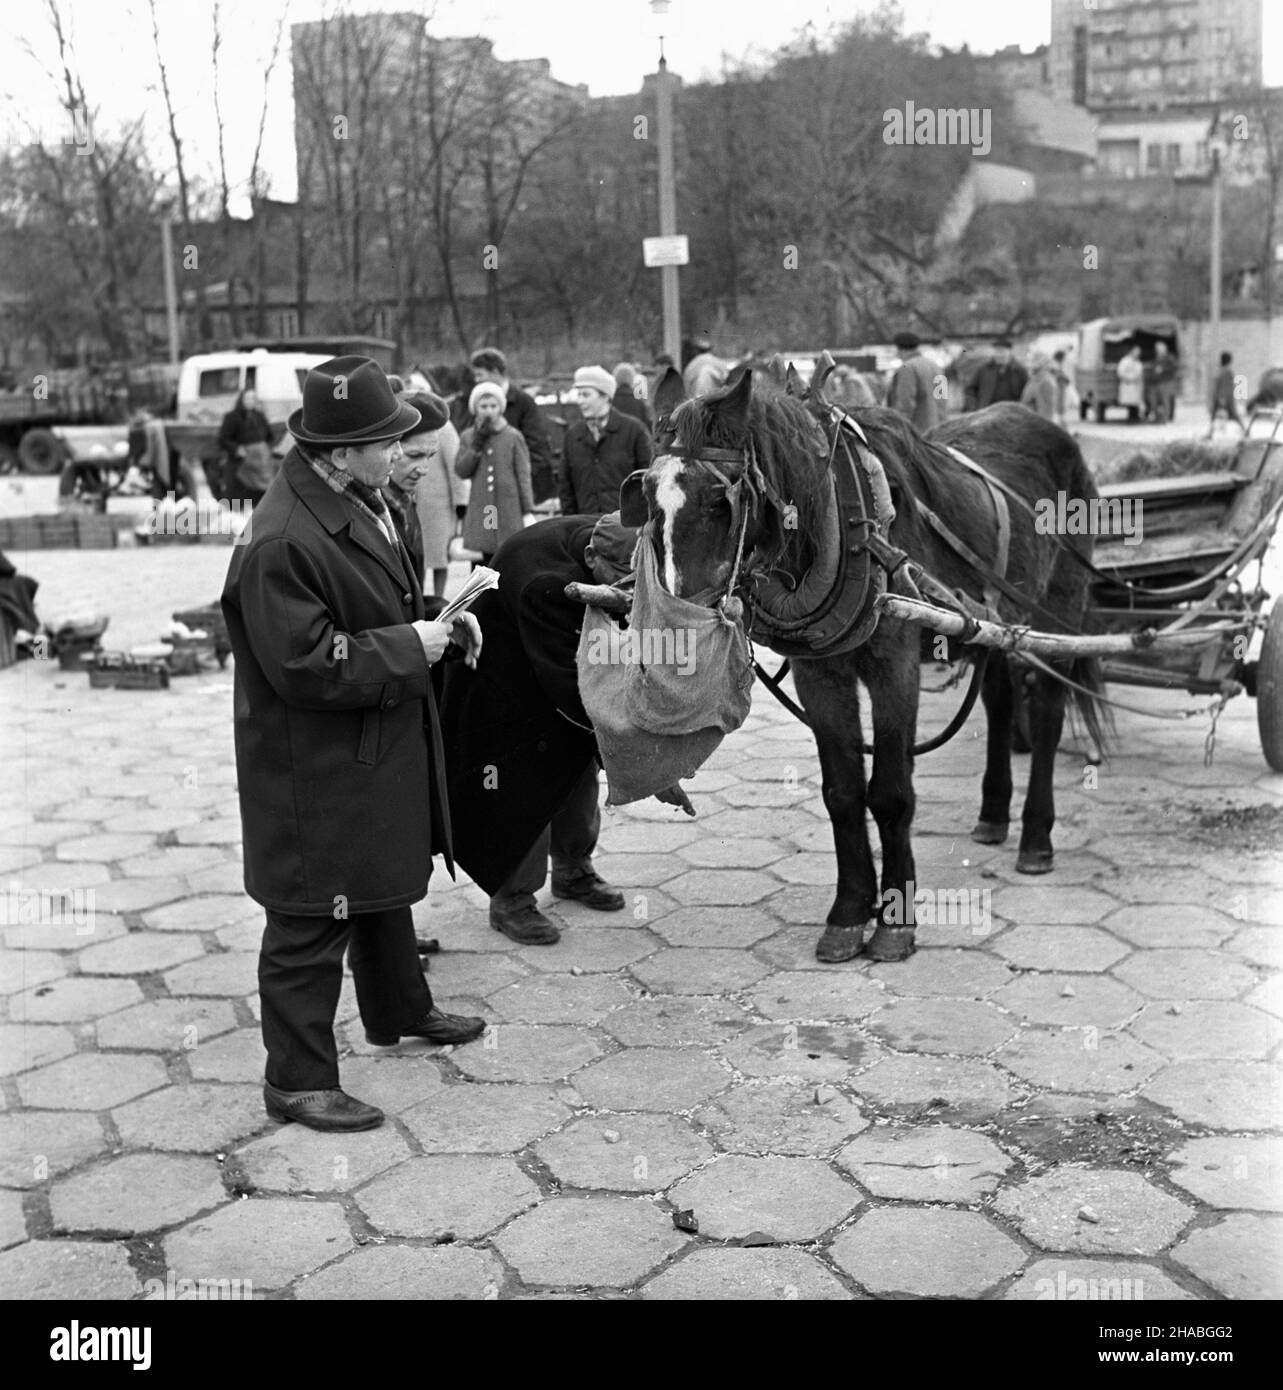 Warszawa, 1969-10-01. Konie na targu ¿ywnoœci w Warszawie. Nz. koñ zaprzêgniêty do wozu. mb  PAP/Boles³aw Miedza    Dok³adny dzieñ wydarzenia nieustalony.      Warsaw, Oct. 1, 1969. Horses at a food market in Warsaw. Pictured: a horse harnassed to a cart.  mb  PAP/Boleslaw Miedza Stock Photo